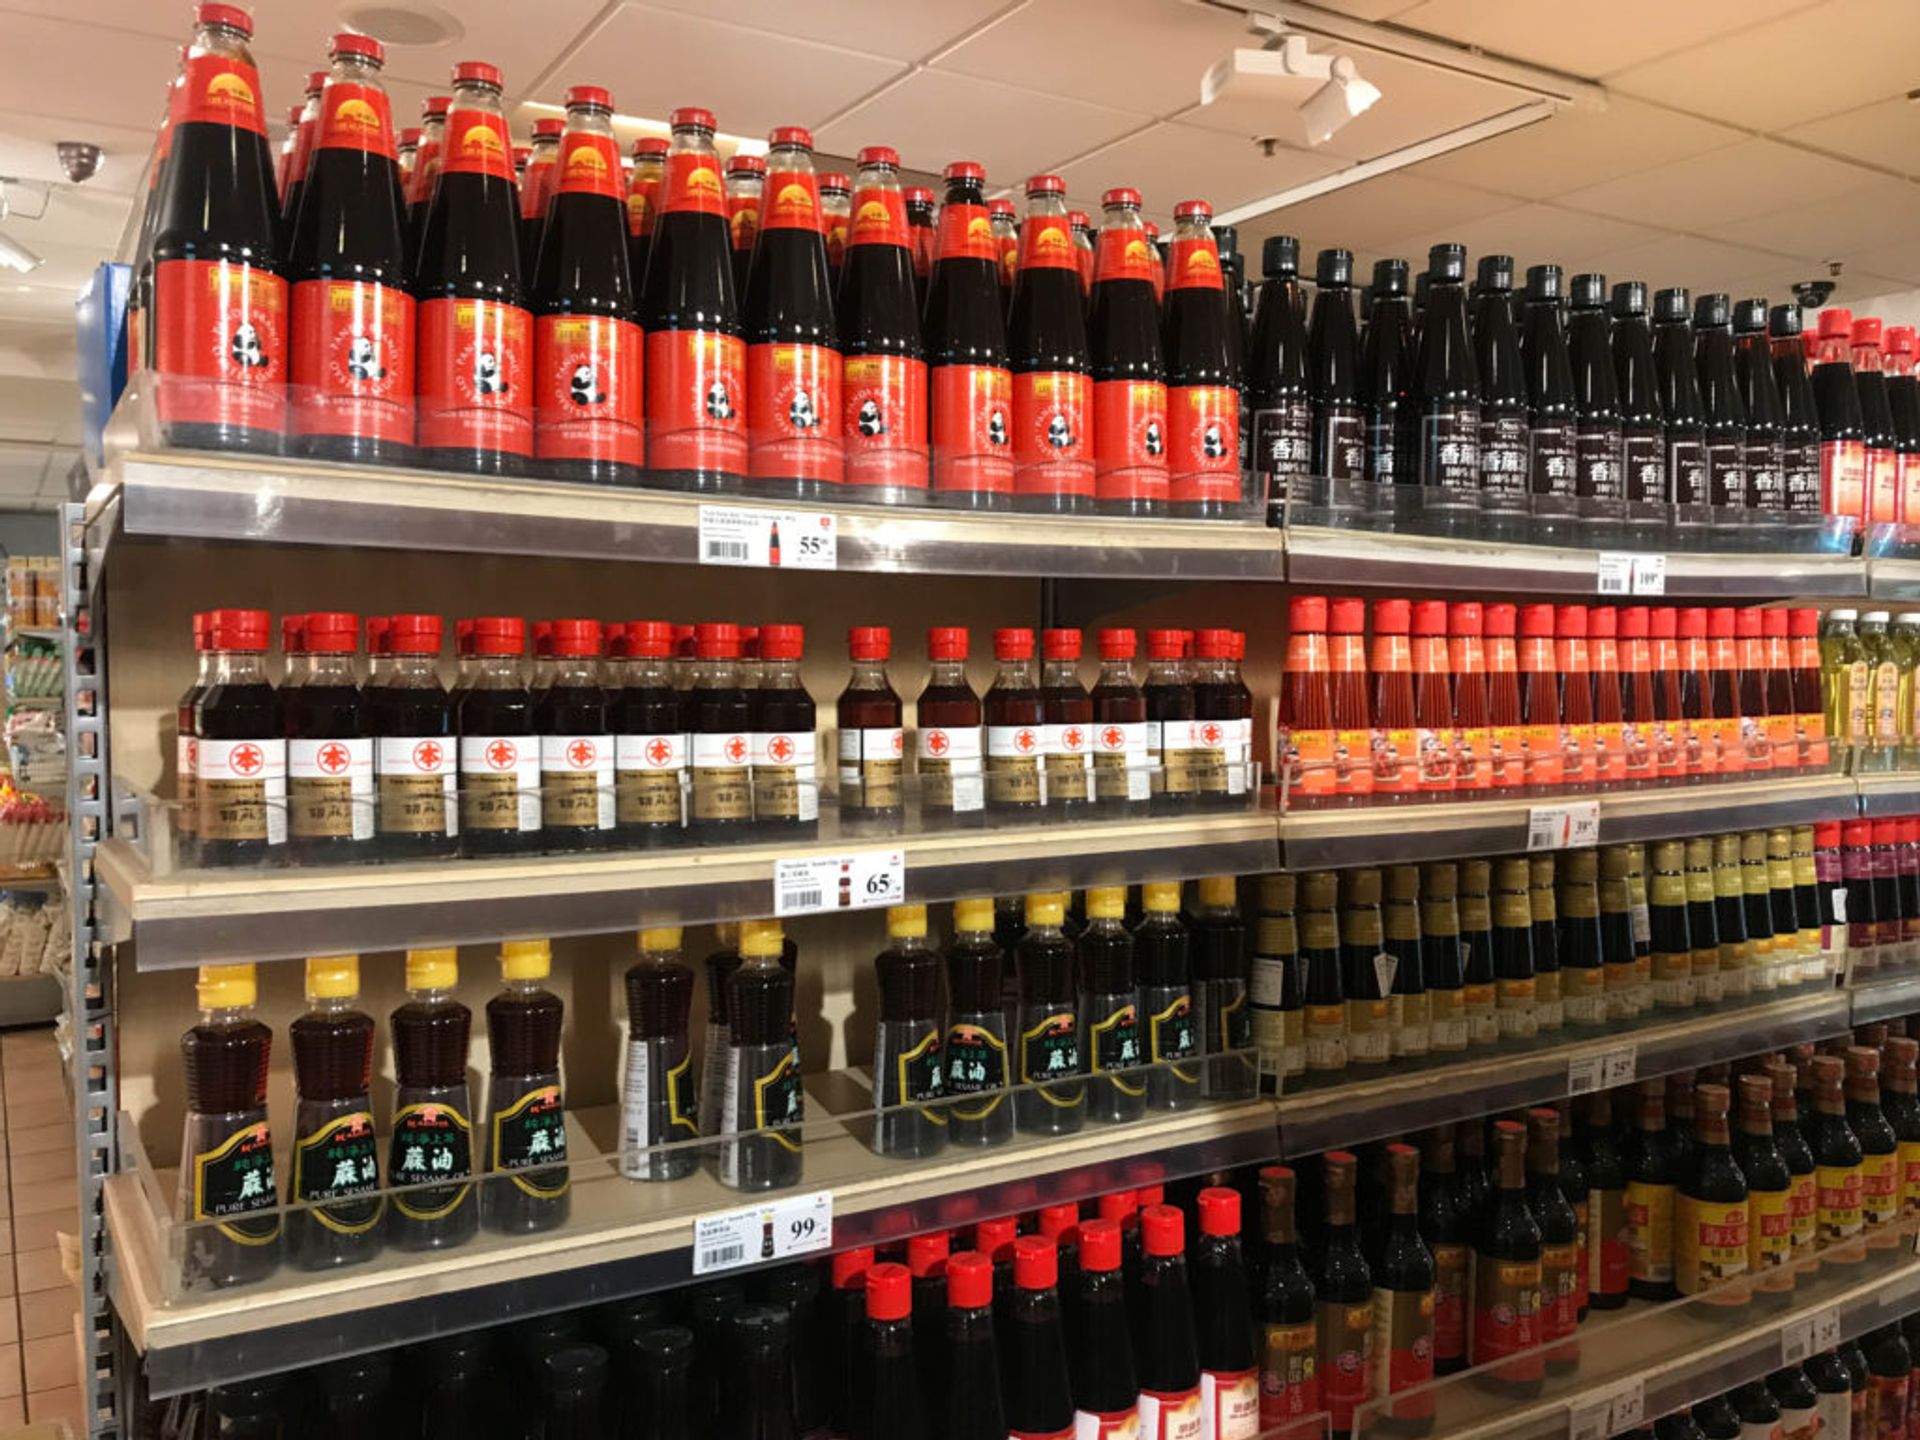 Shelves of sauce bottles.